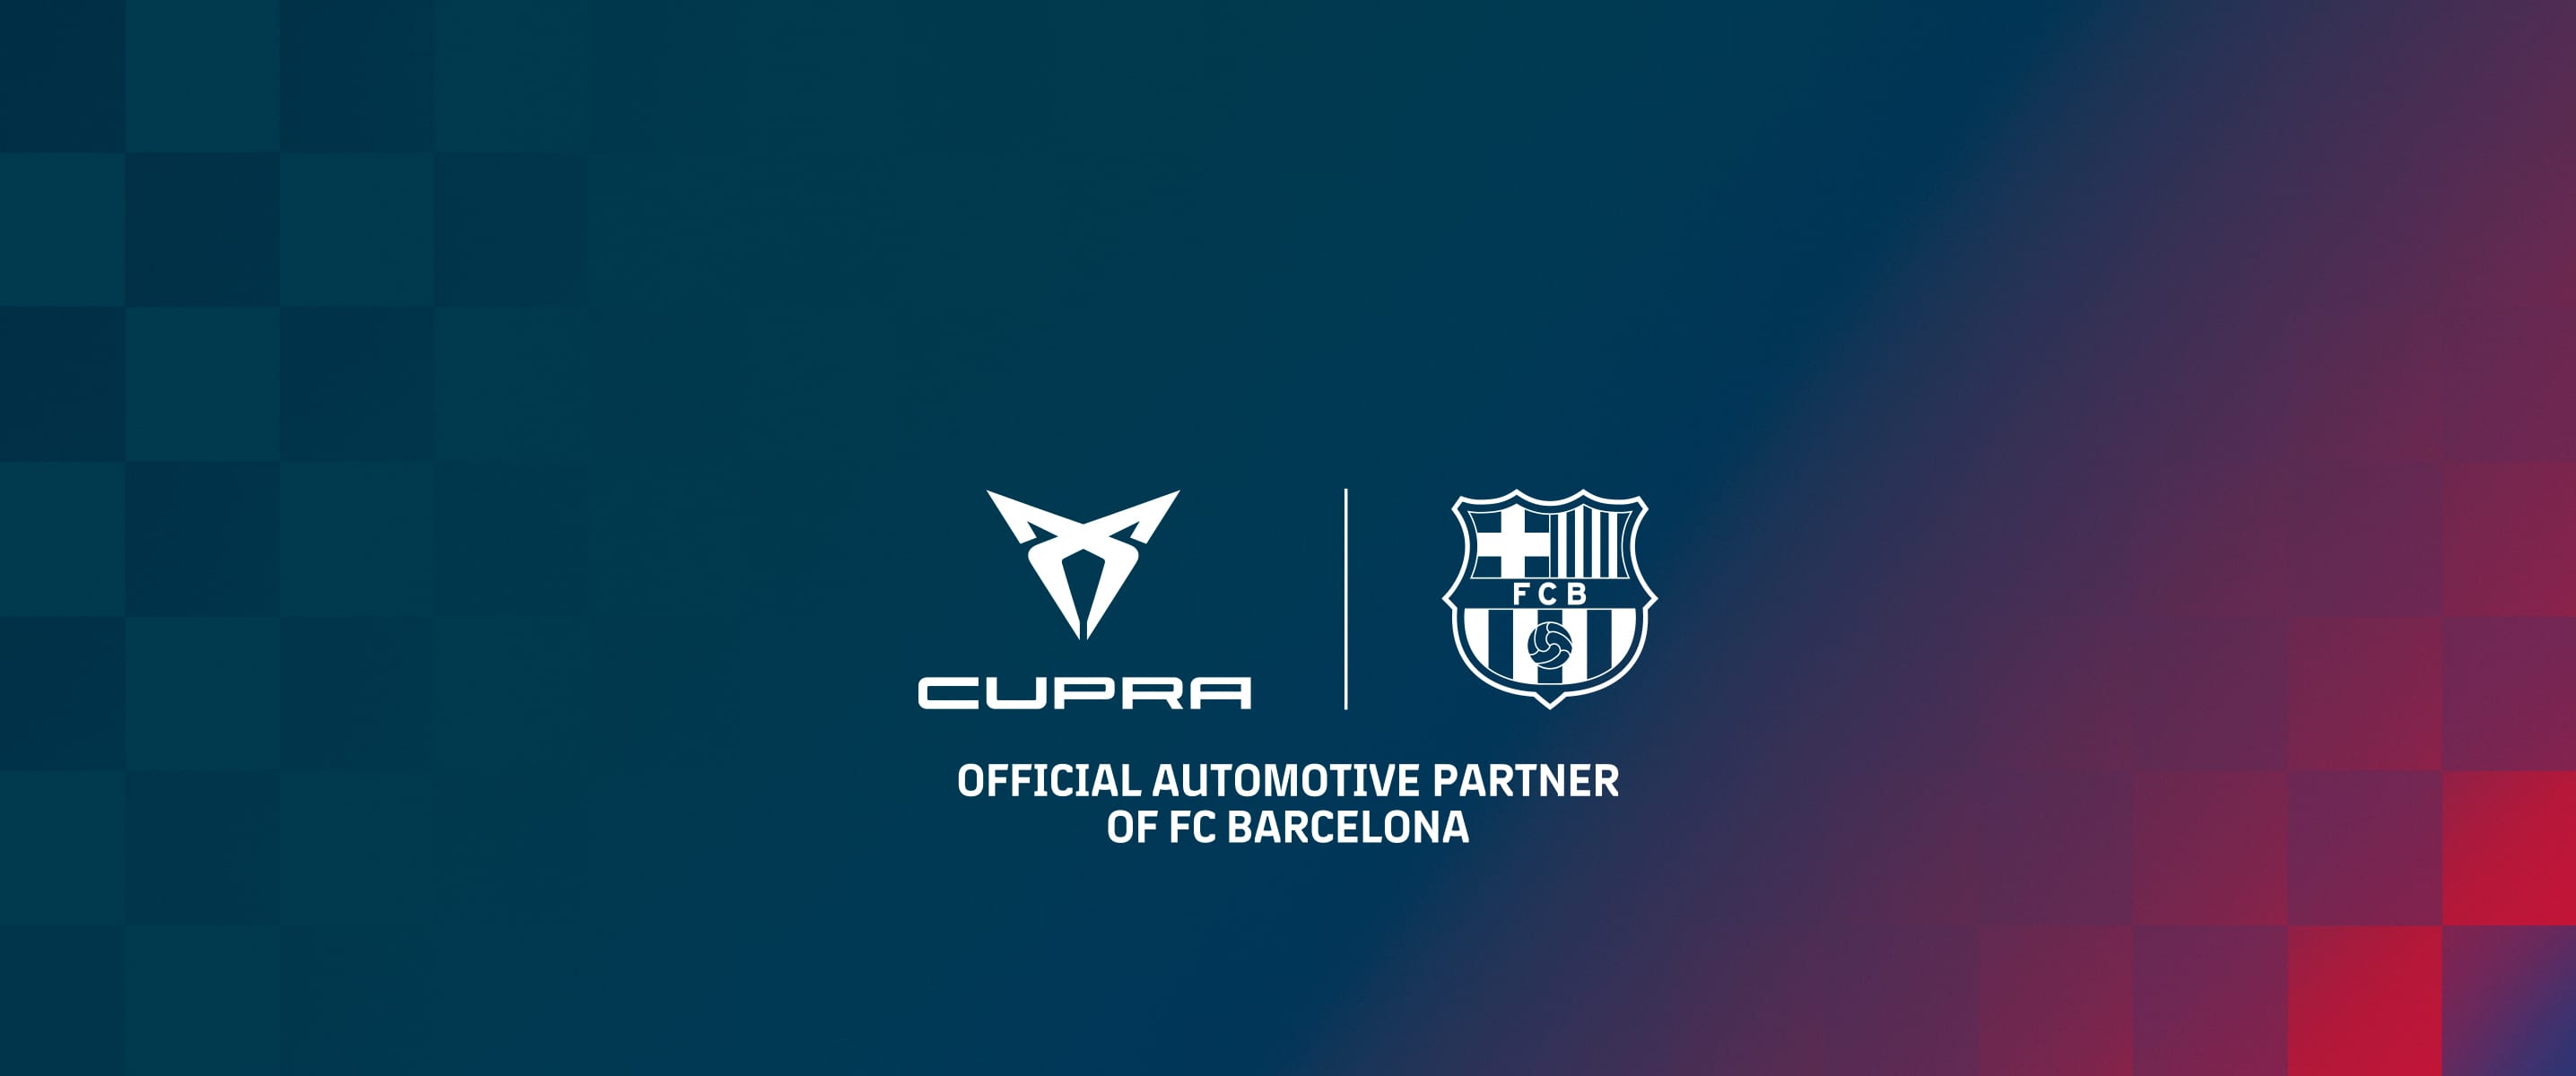 CUPRA i FC Barcelona units